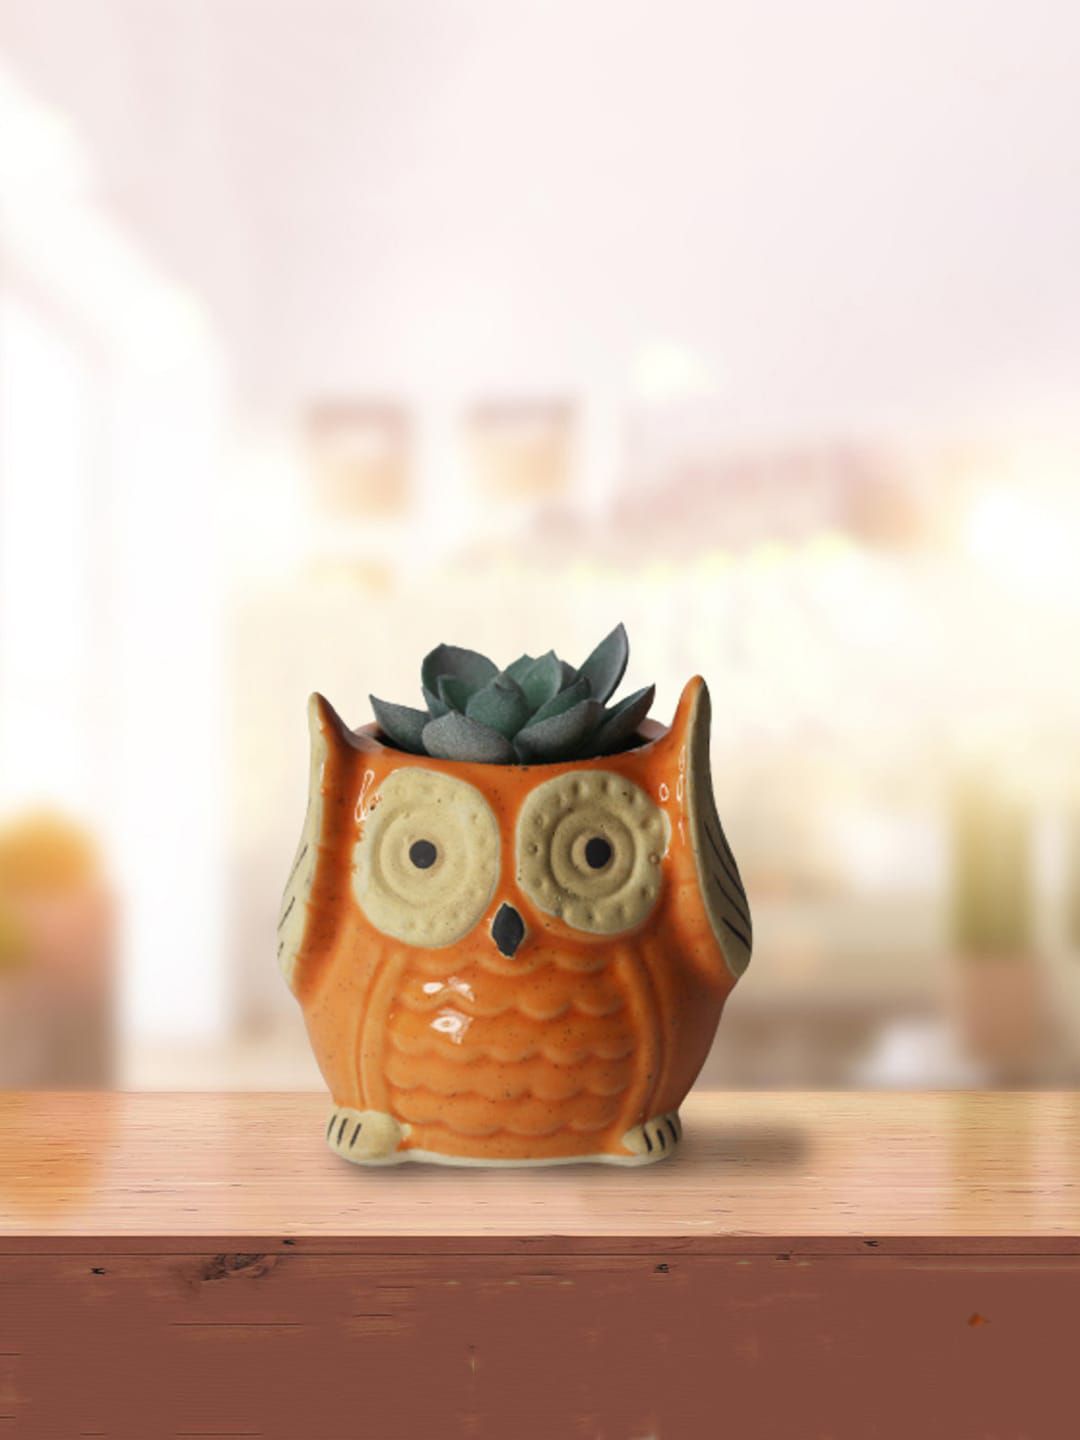 Wonderland Orange Owl Ceramic Planters Price in India